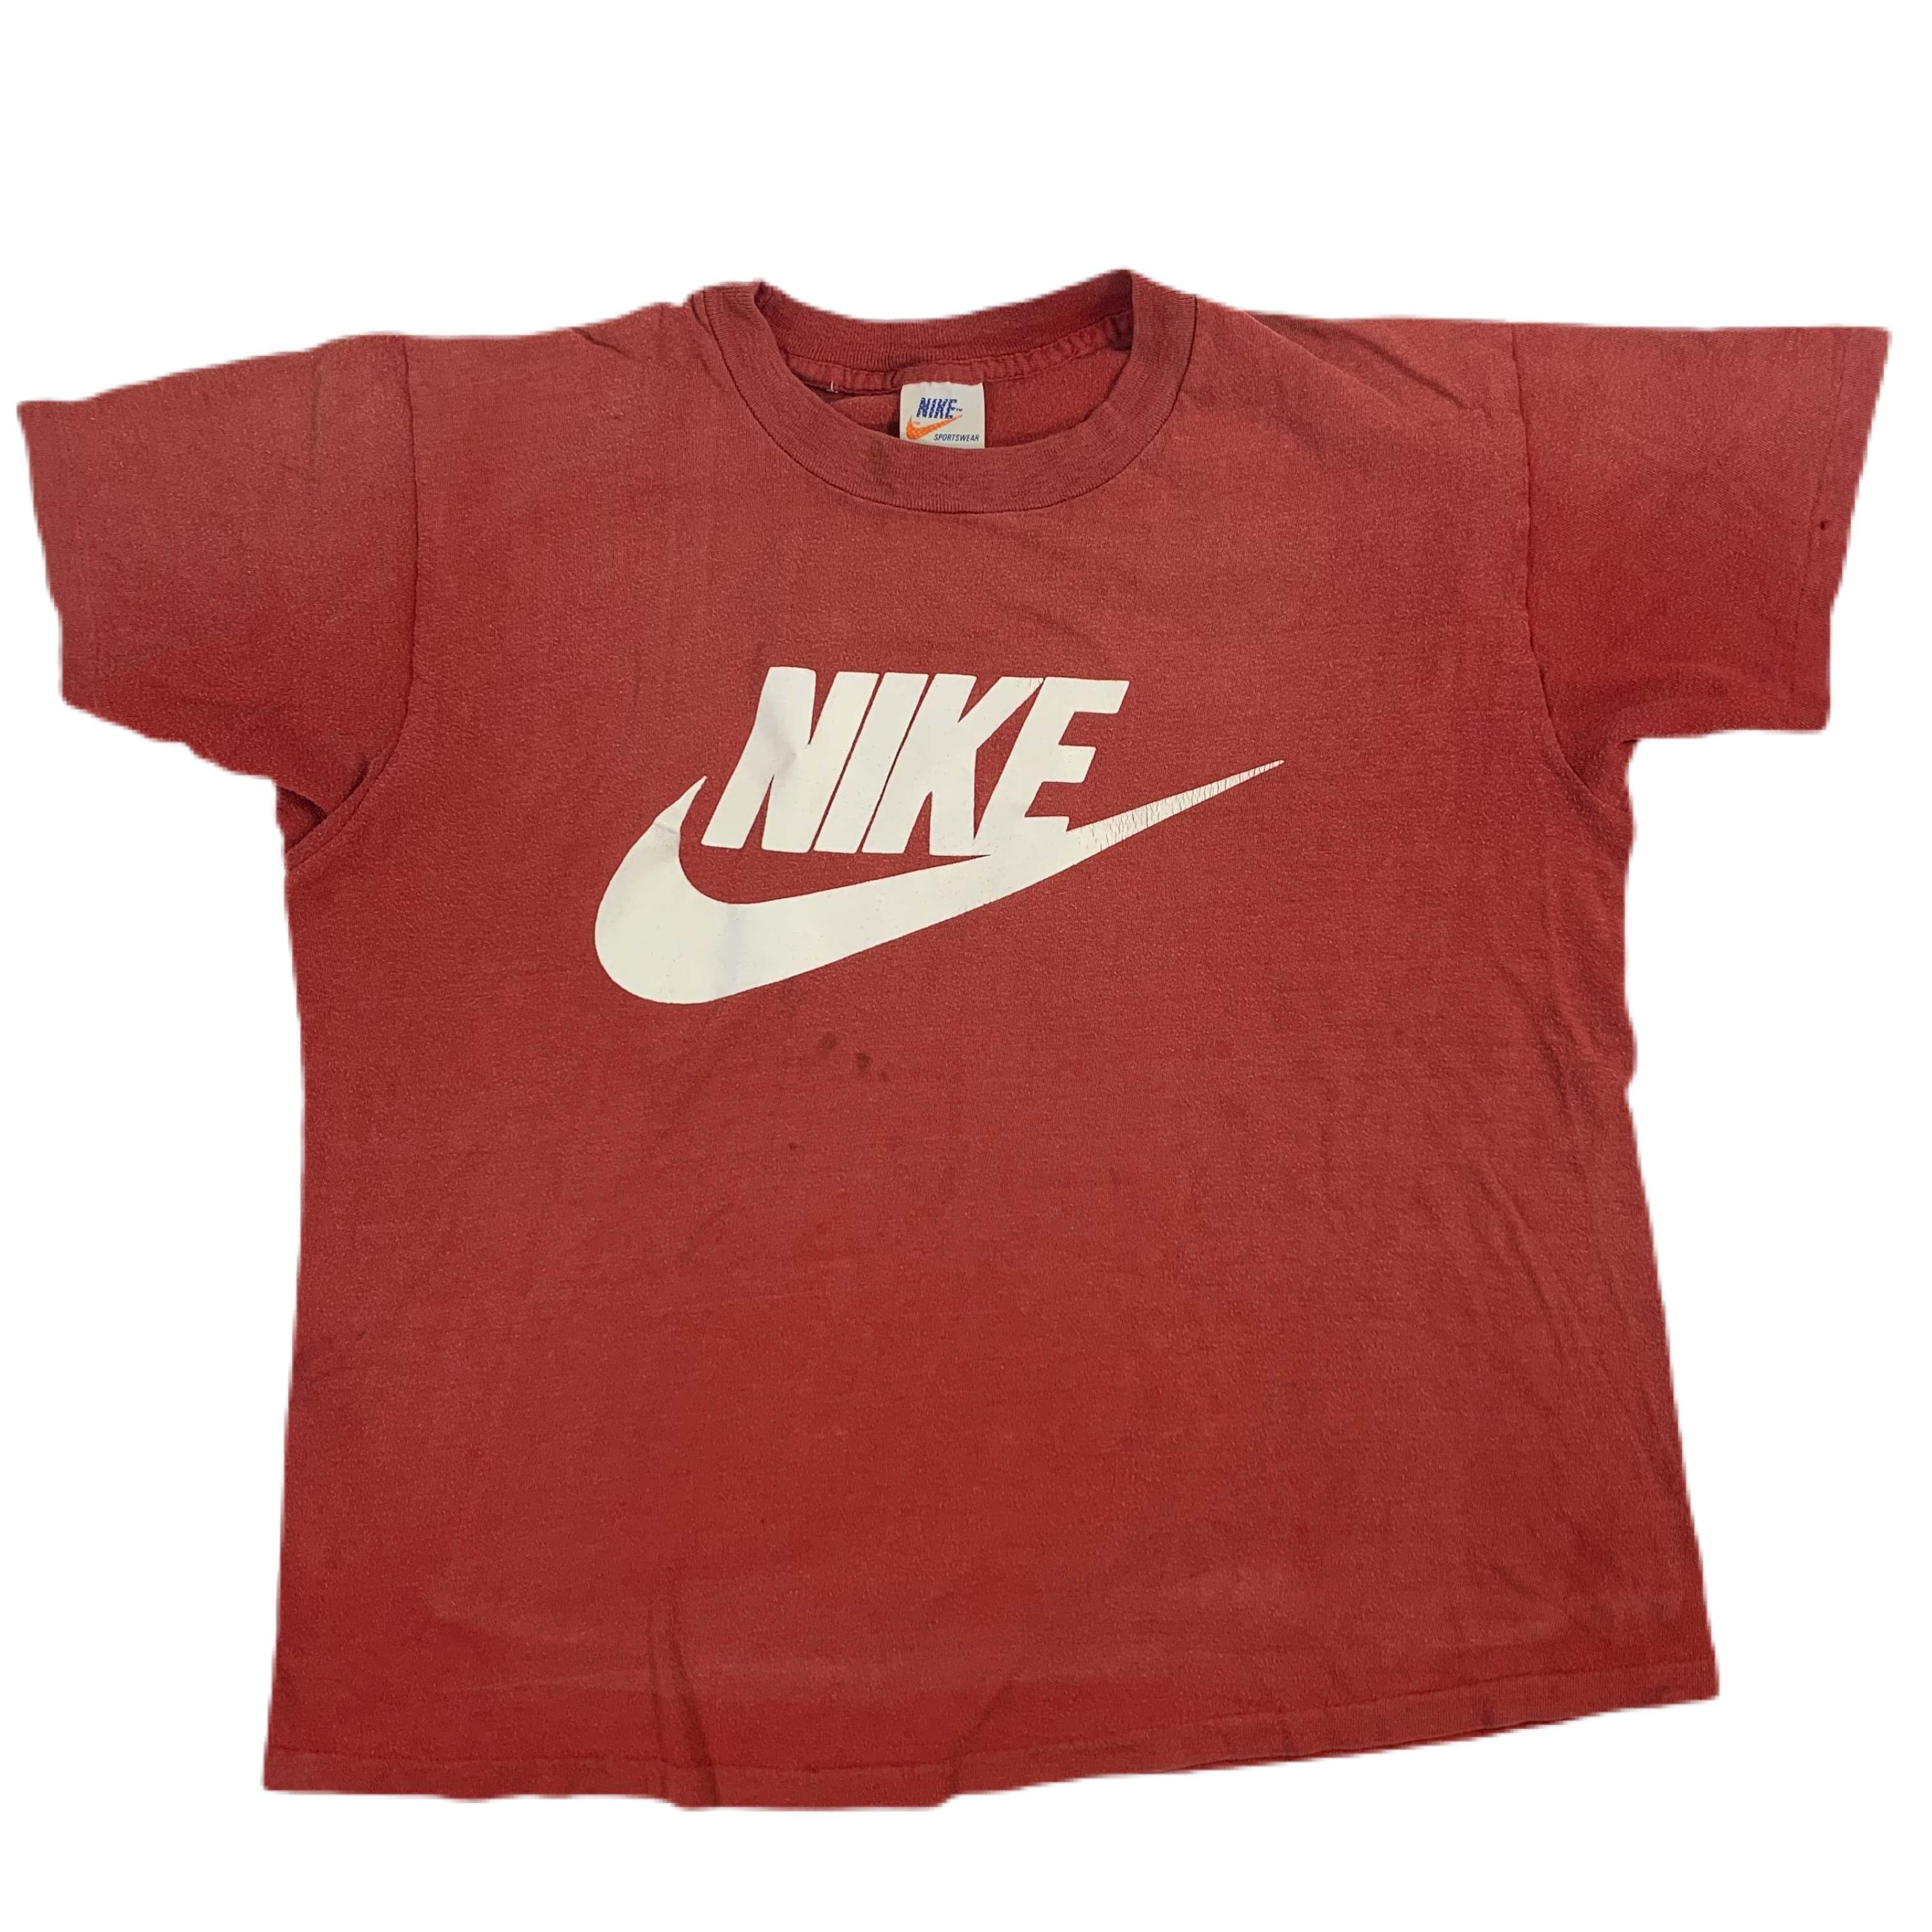 Vintage Nike "Sportswear" T-Shirt jointcustodydc